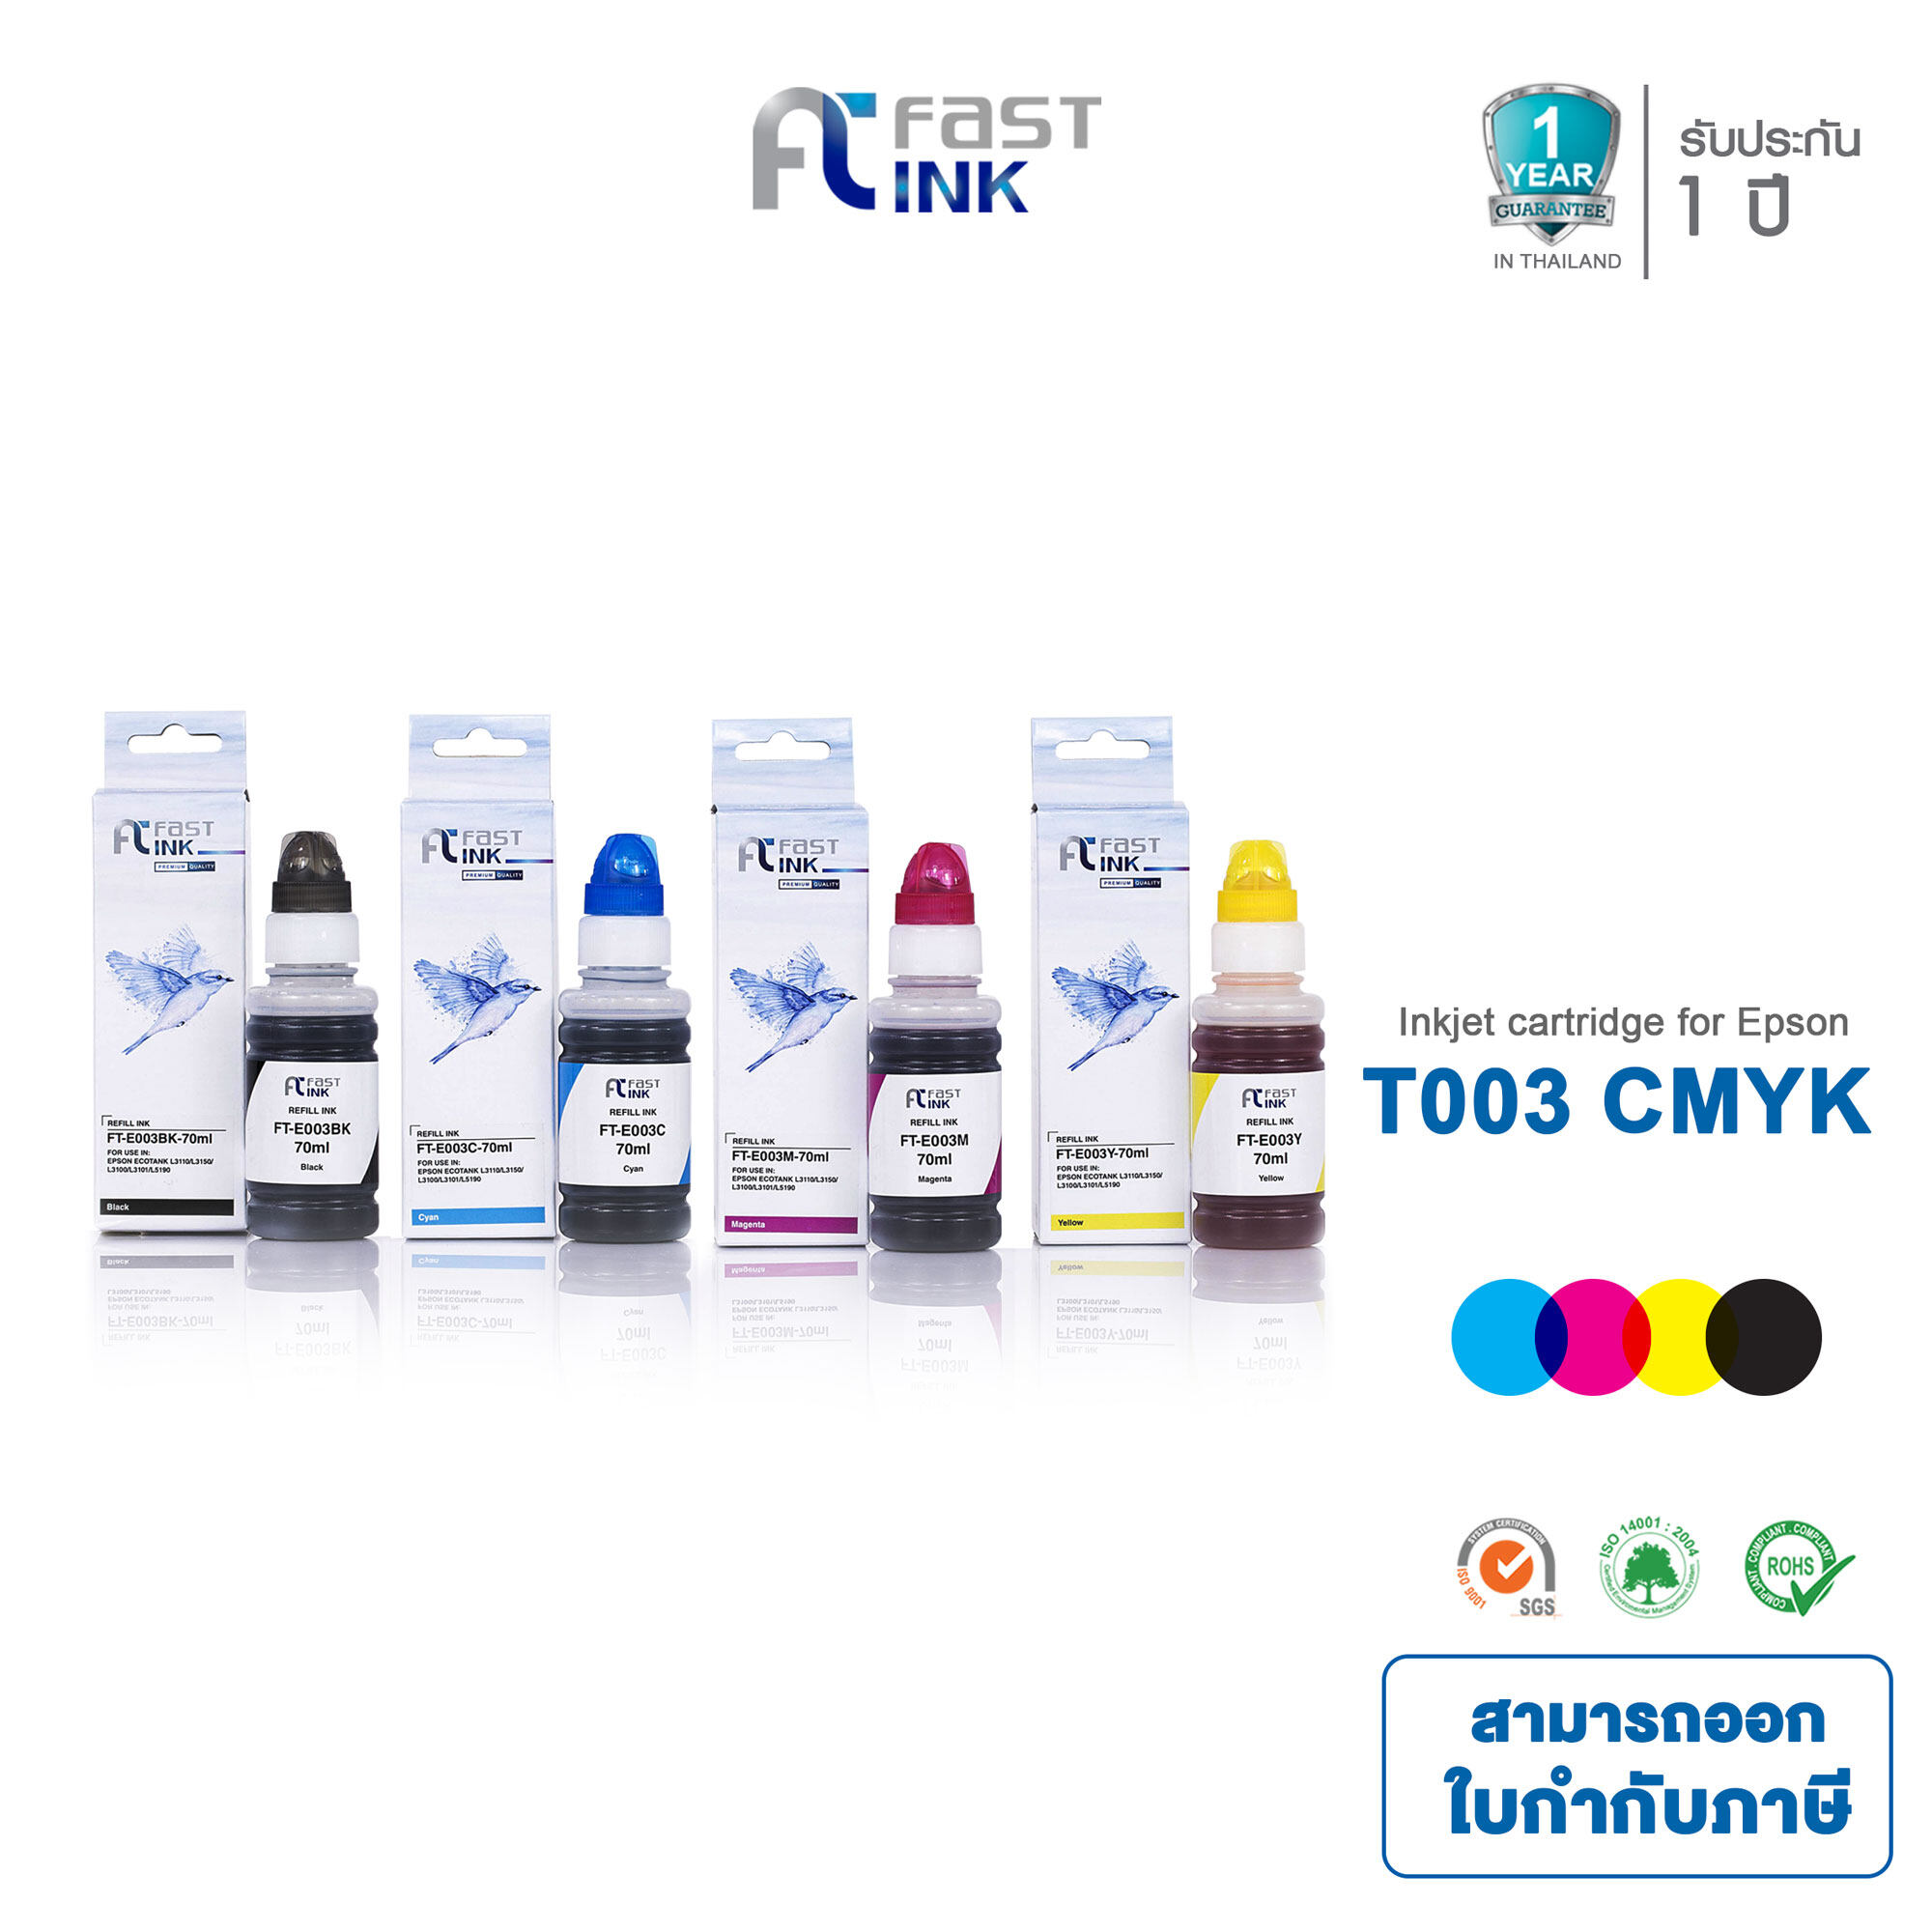 น้ำหมึกเติม Fast Ink สำหรับรุ่น Epson 003 ชุด 4 สี สำหรับเครื่องอิงค์รุ่น Epson L1110 / L3100 / L3101 / L3110 / L3150 / L5190